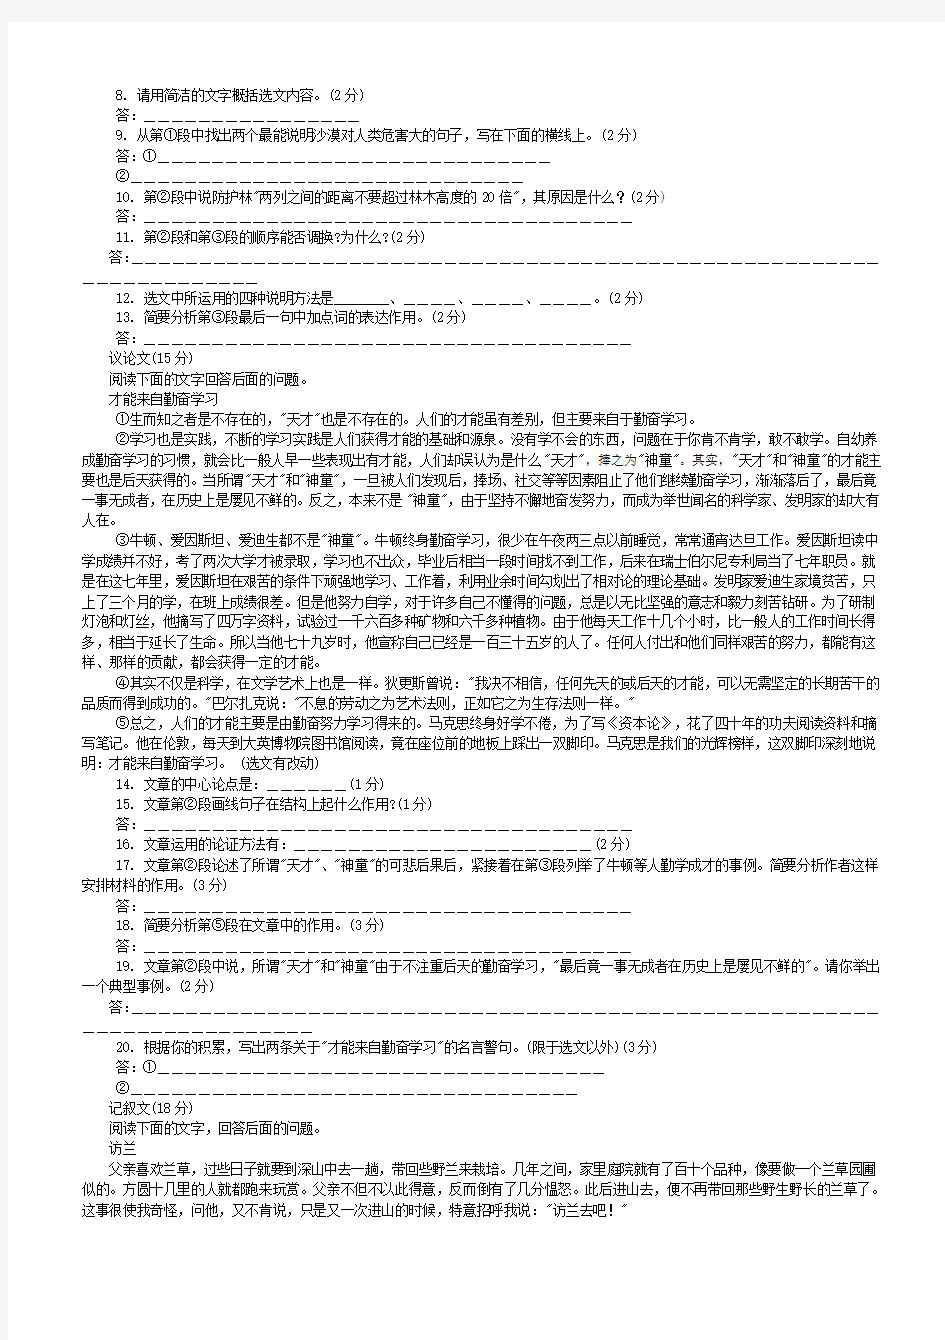 2000-2011年河北省中考语文试题合集